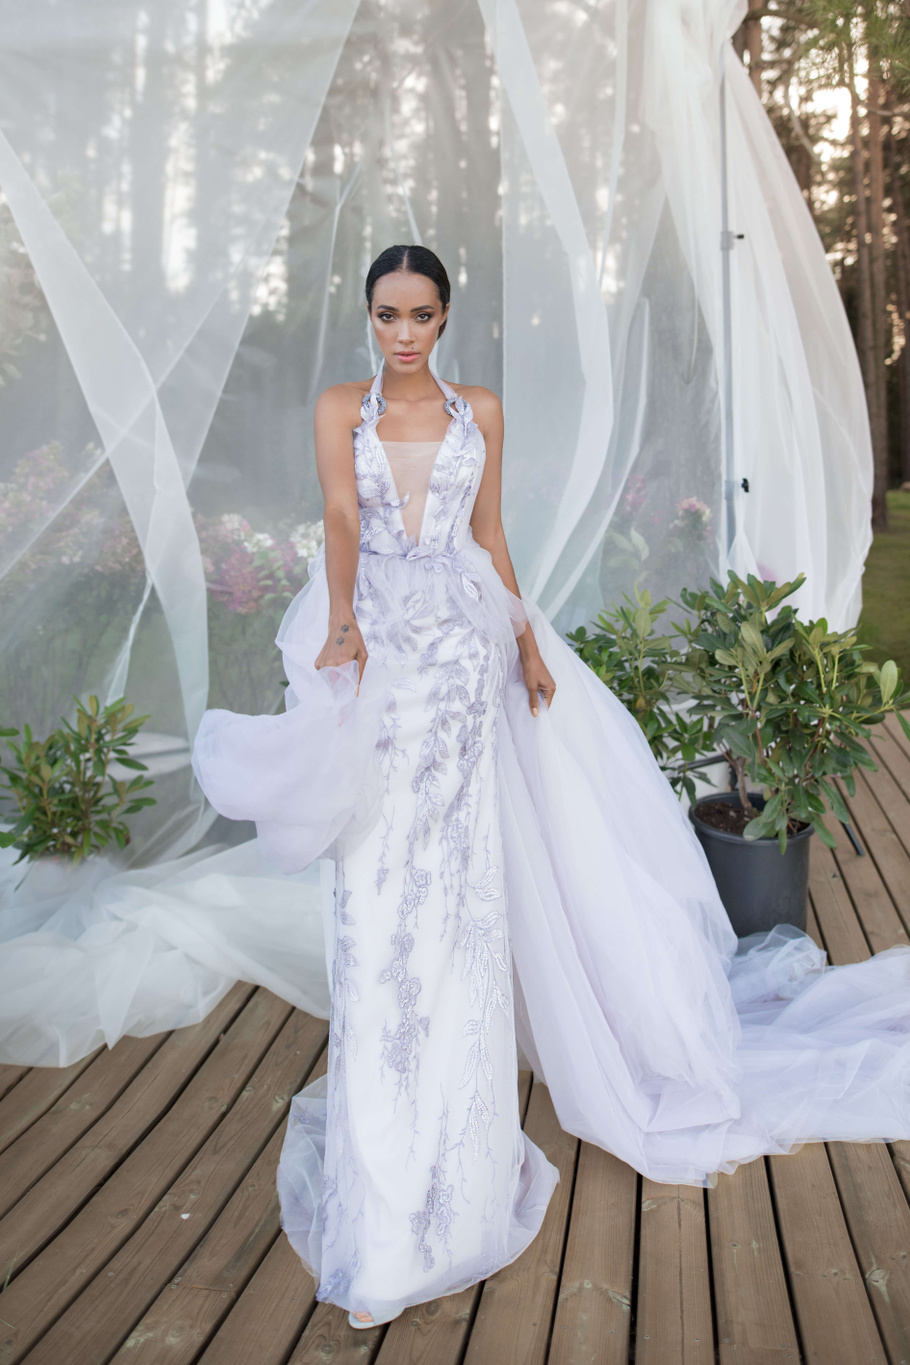 Купить свадебное платье «Луи» Бламмо Биамо из коллекции Нимфа 2020 года в Екатеринбурге